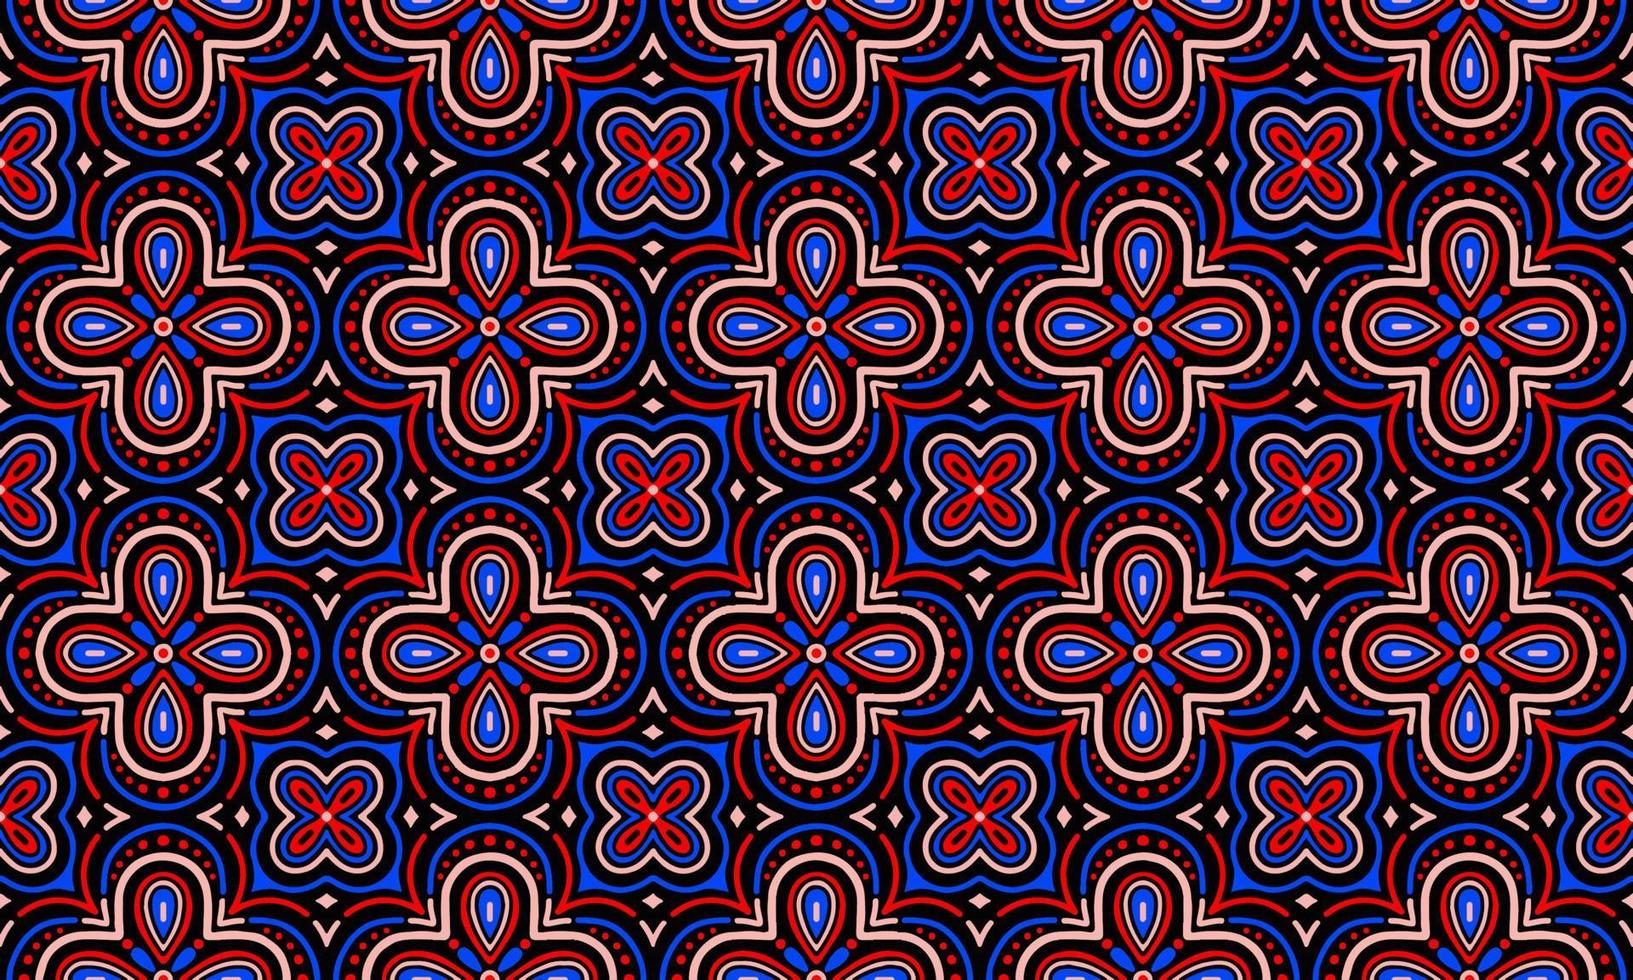 etnisch abstract achtergrond schattig rood blauw zwart bloem meetkundig tribal volk motief Arabisch oosters inheems patroon traditioneel ontwerp tapijt behang kleding kleding stof omhulsel afdrukken batik volk vector